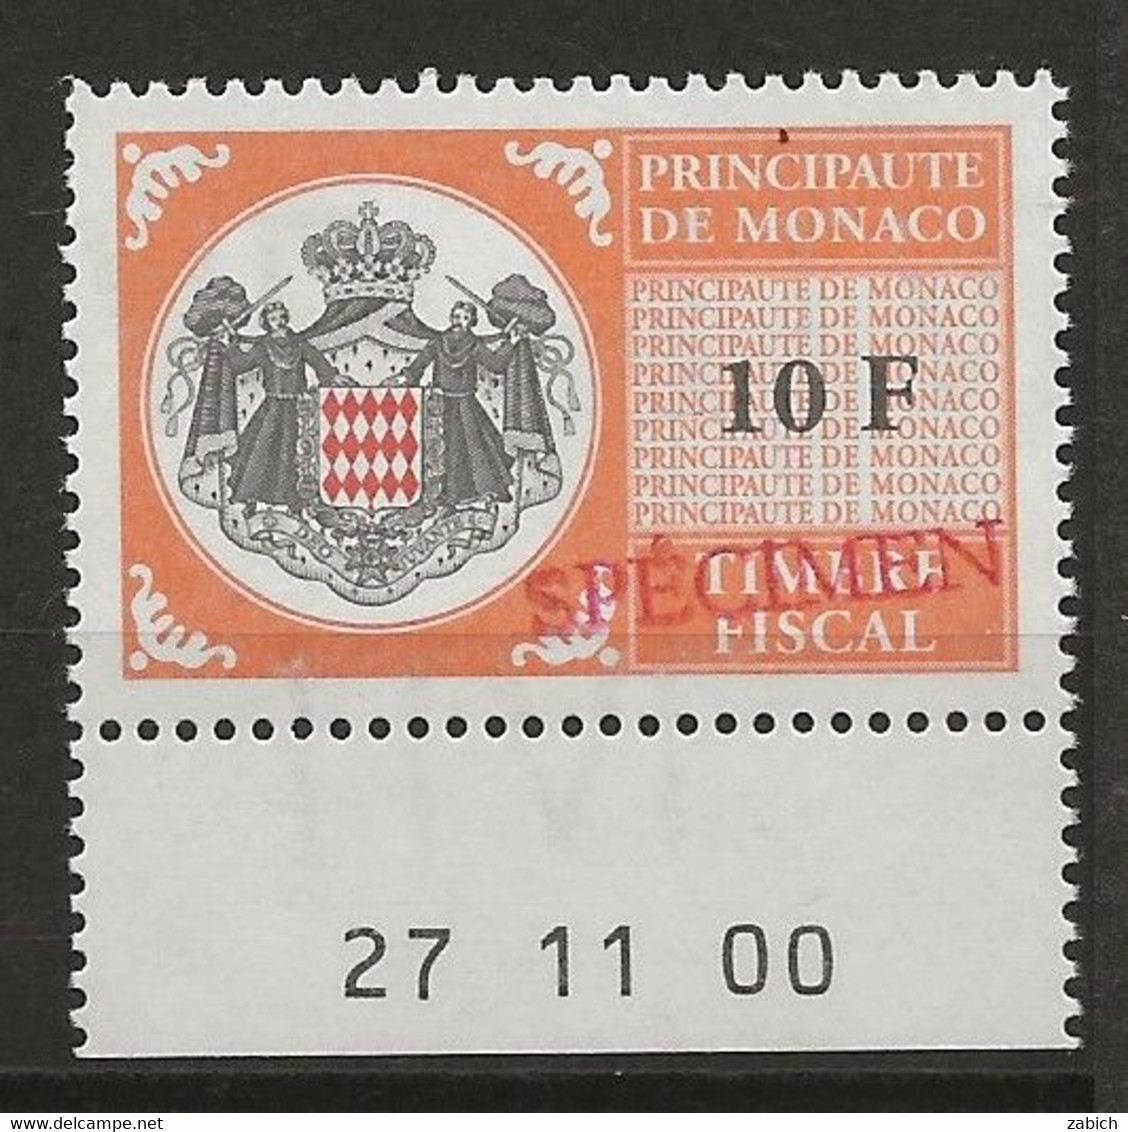 FISCAUX DE MONACO SERIE UNIFIEE N° 102 10Forange Rare Coin Daté Du 27 11 00 Surchargé Spécimen Neuf Gomme Mnh (**) - Revenue